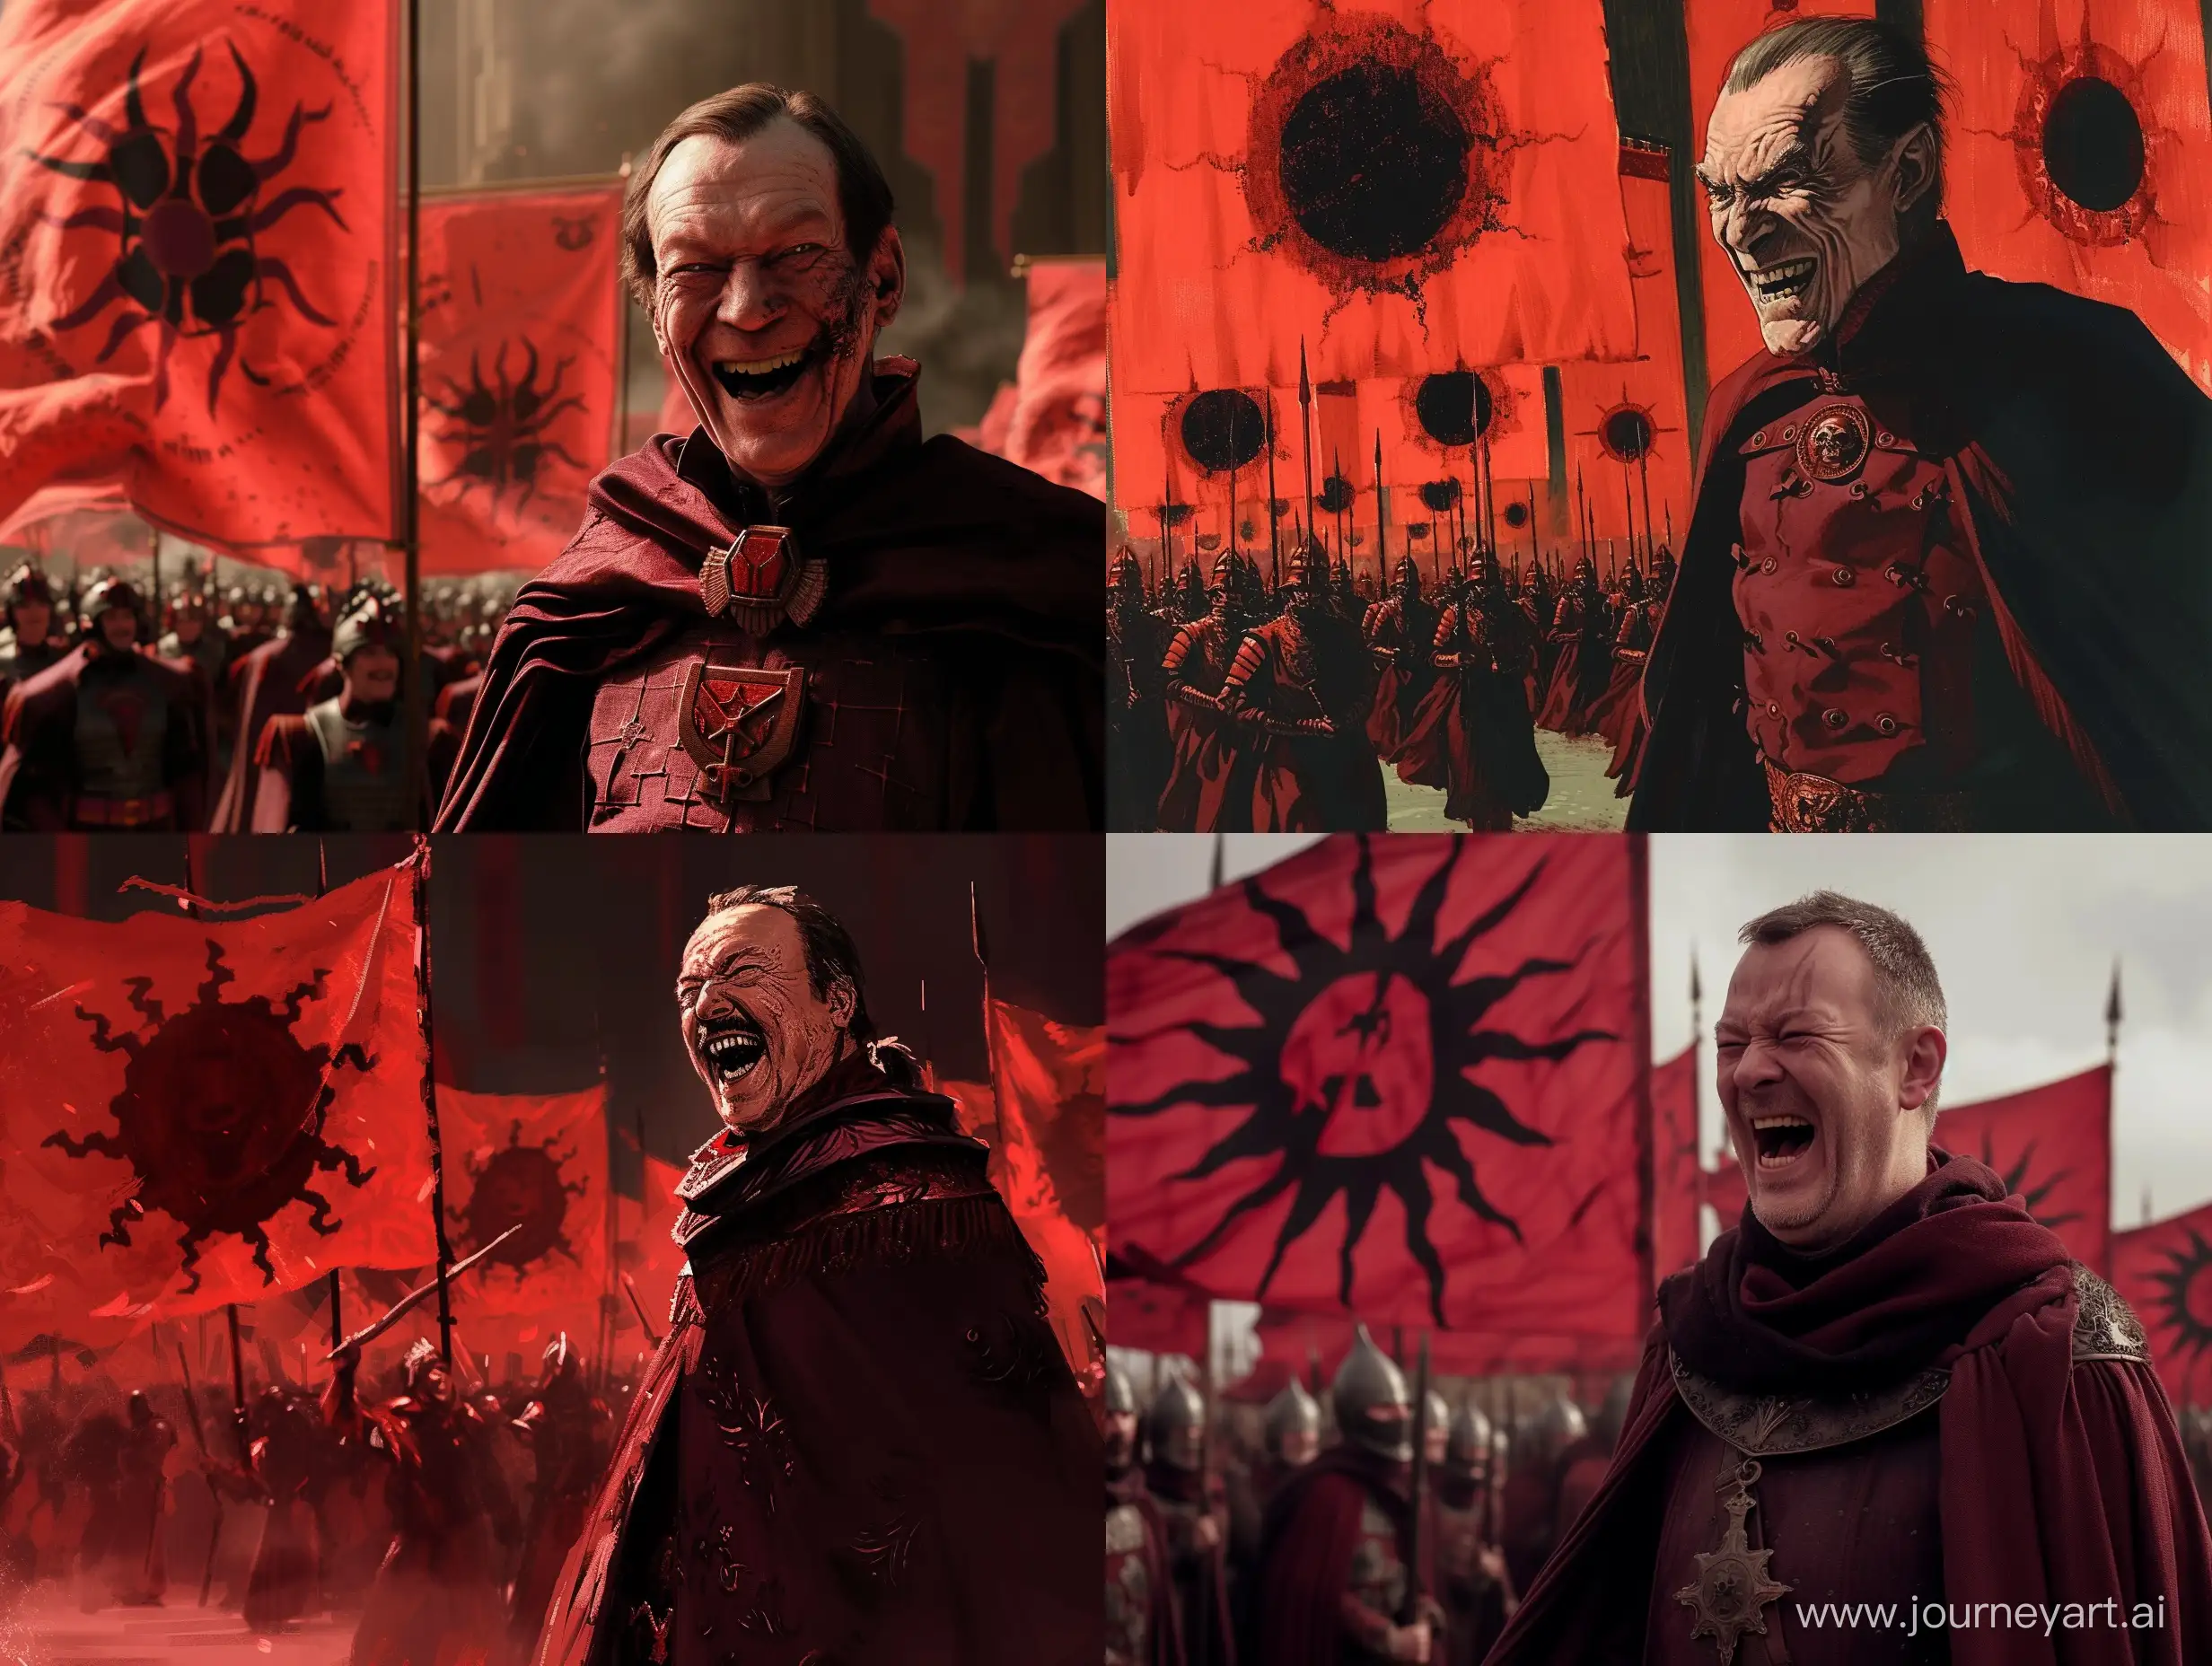 Человек мужчина Верховный главнокомандующий в темно красном стренче, злобно смеется, на фоне армия со знаменами красного цвета с изображением черного солнца